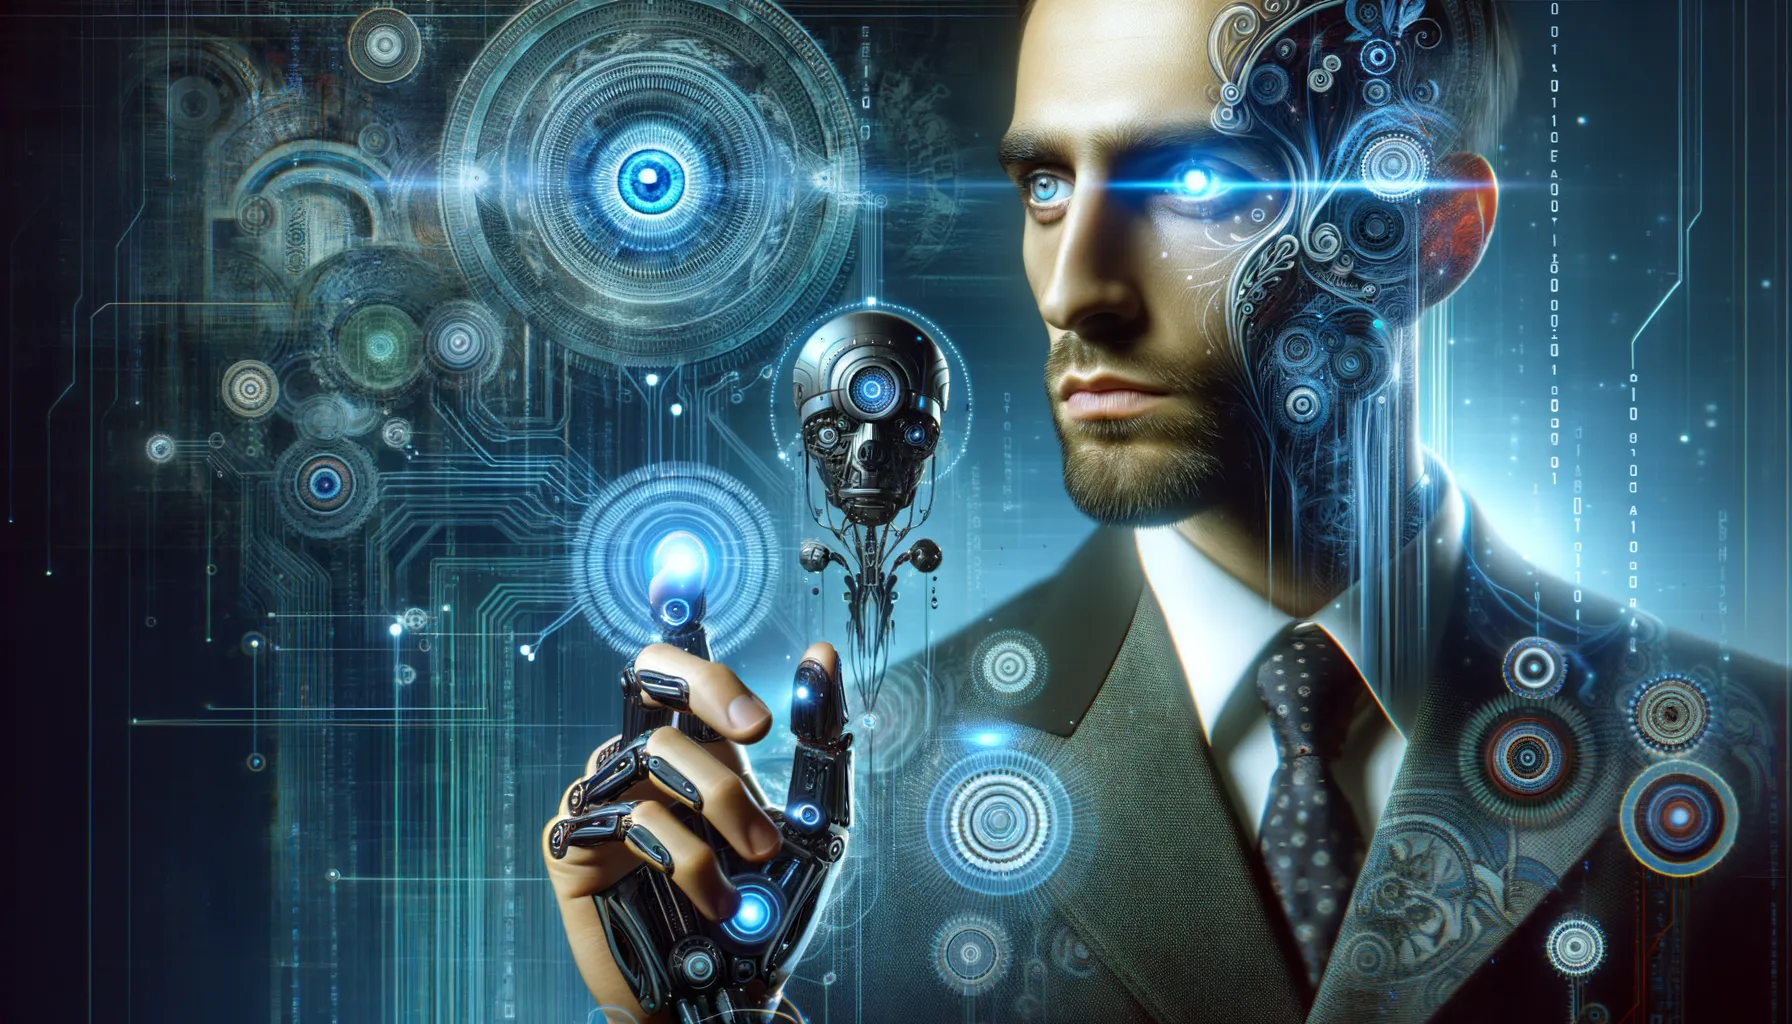 Capa do artigo sobre inteligência artificial generativa